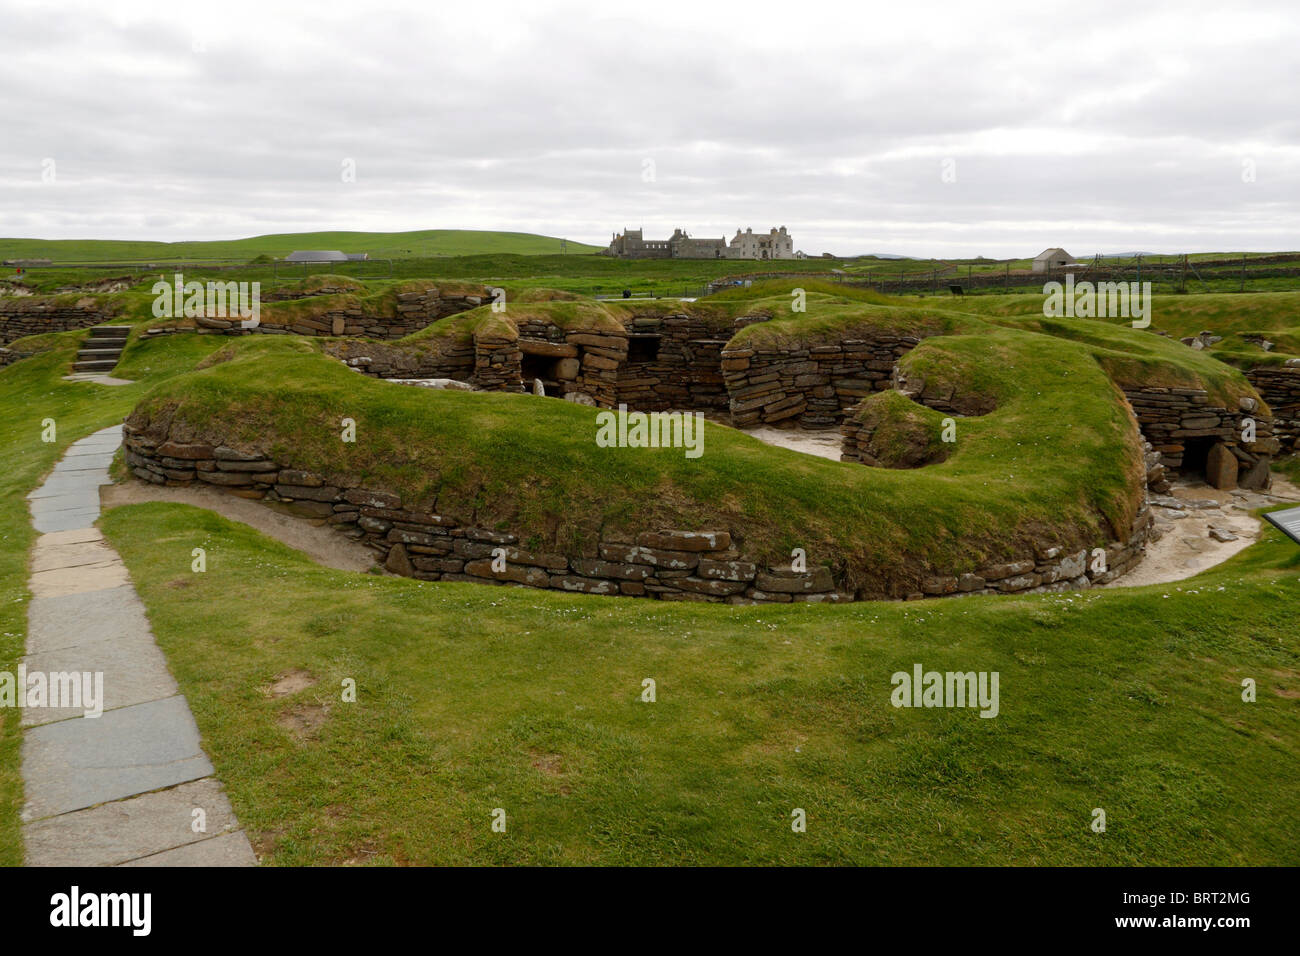 Vista de la aldea neolítica de Skara Brae con Skaill House en segundo plano. Foto de stock